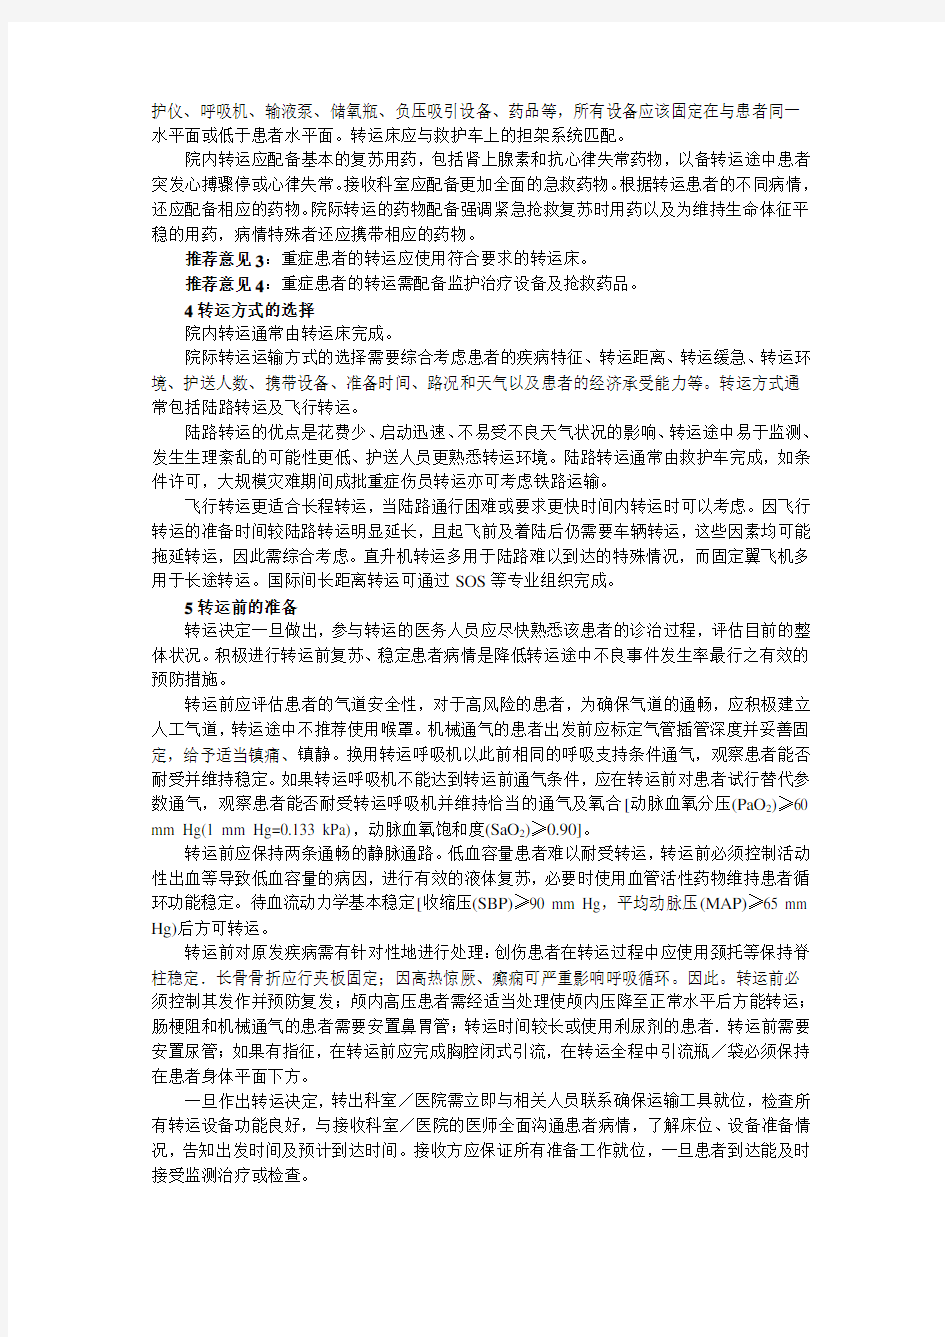 中国重症患者转运指南(2010) (草案)